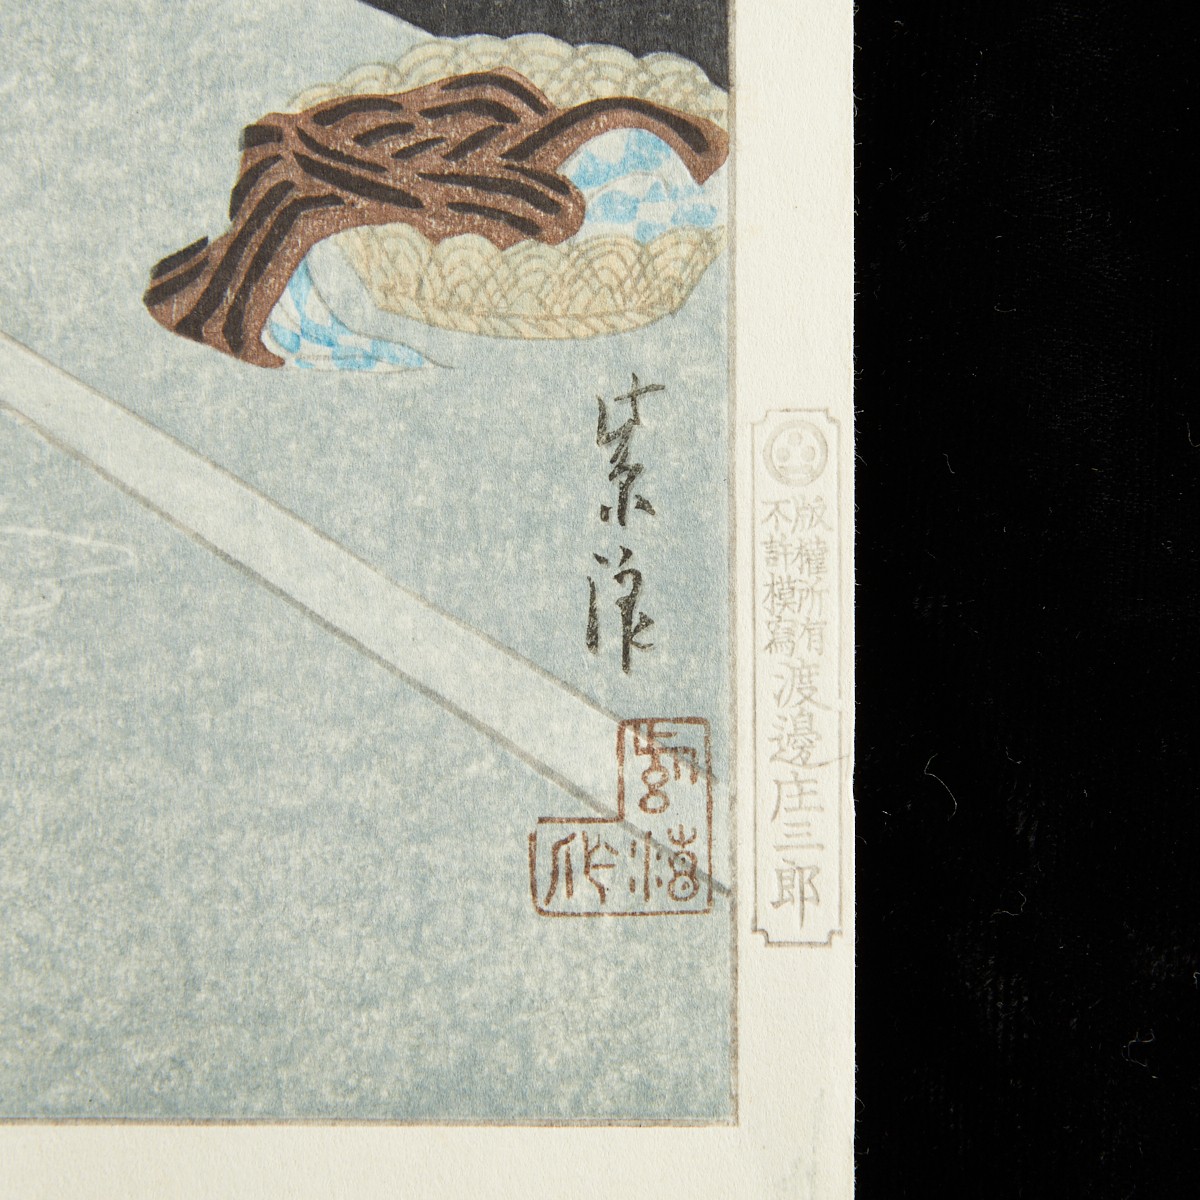 Kasamatsu Shiro "Hot Spring in the Morning" Woodblock Print - Image 2 of 6